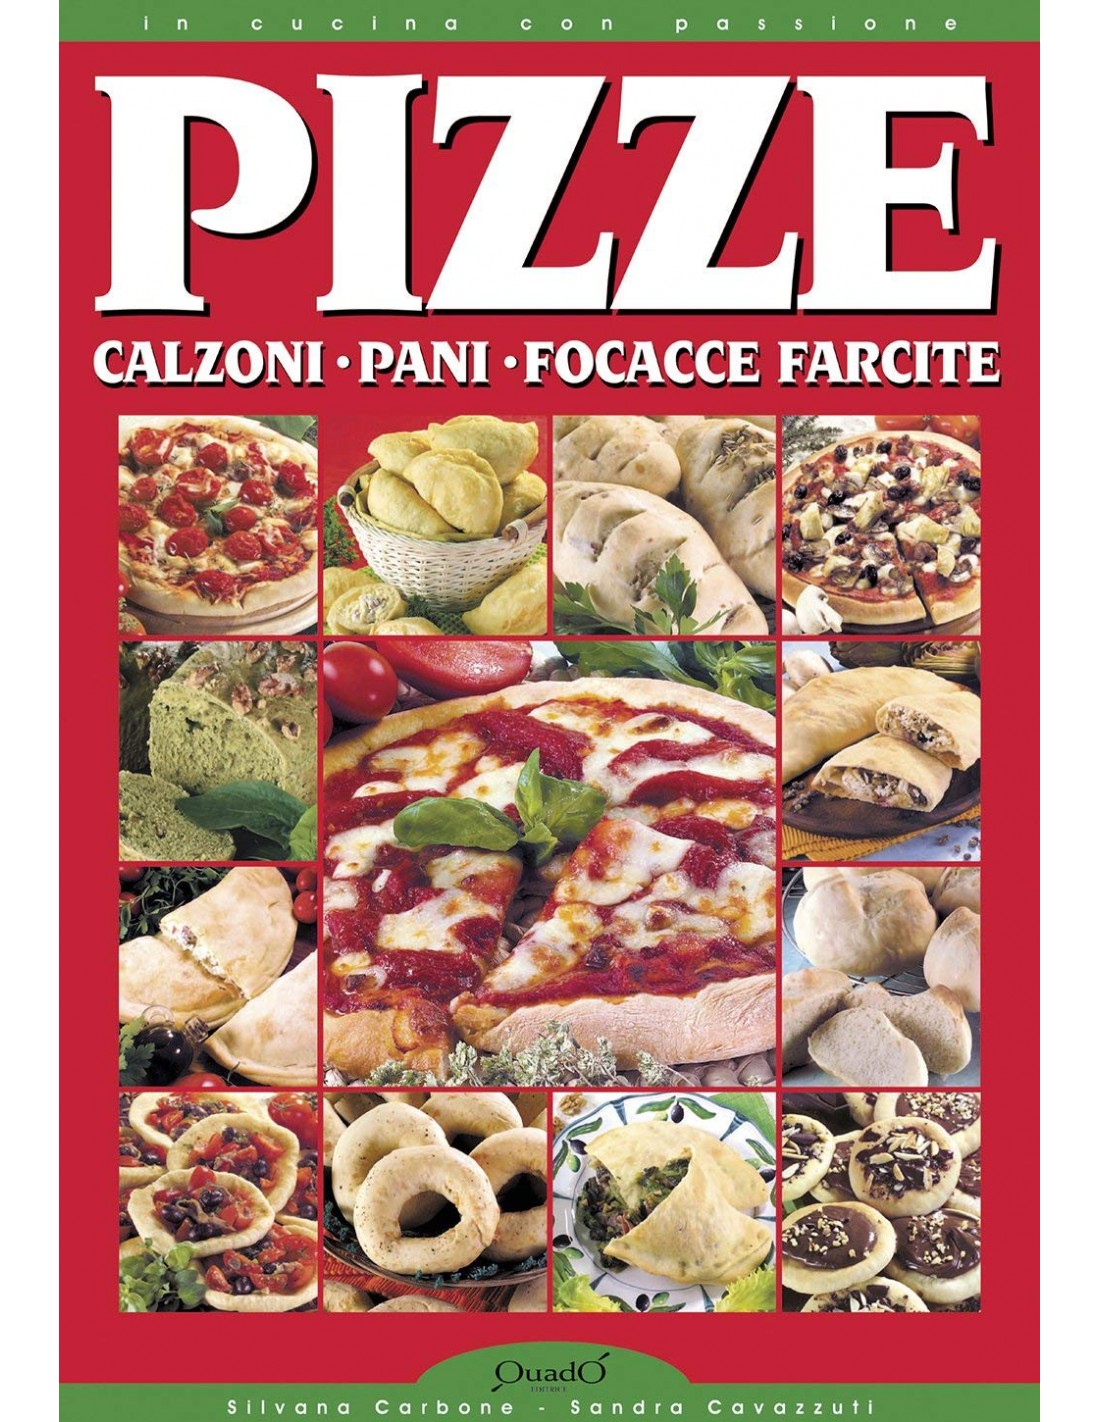 Forno Pizza CALIENTE con pietra refrattaria 400 gradi Resistenza circolare SPICE 2 Palette Inox Ricettario PIZZE 